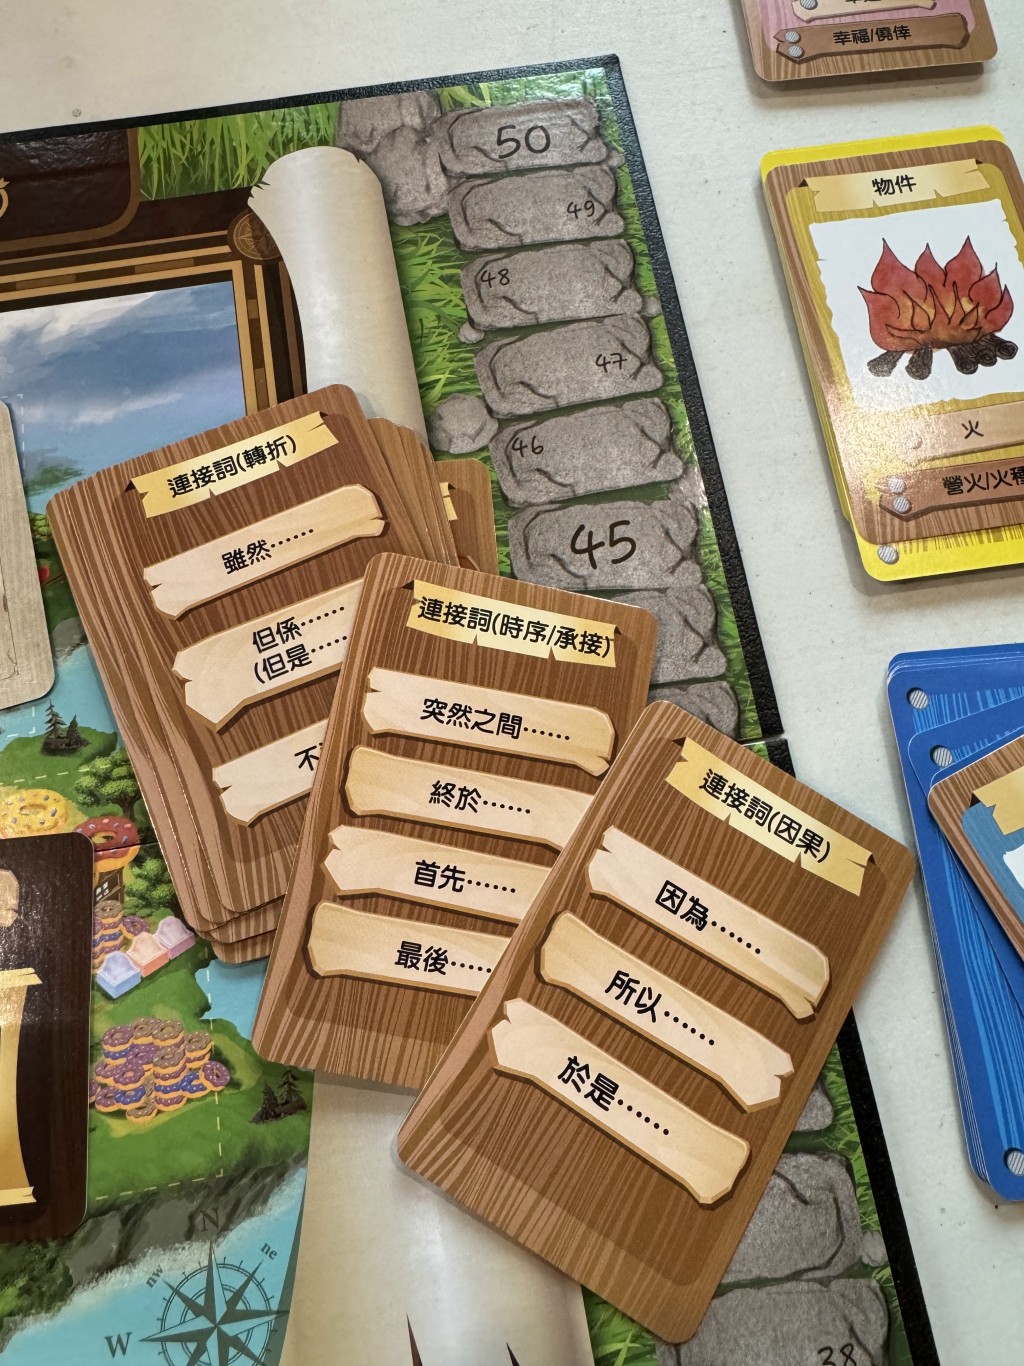 挑戰卡包括介詞、形容詞、連接詞，為玩家提供更多創作題材。（圖片來源：《親子王》）